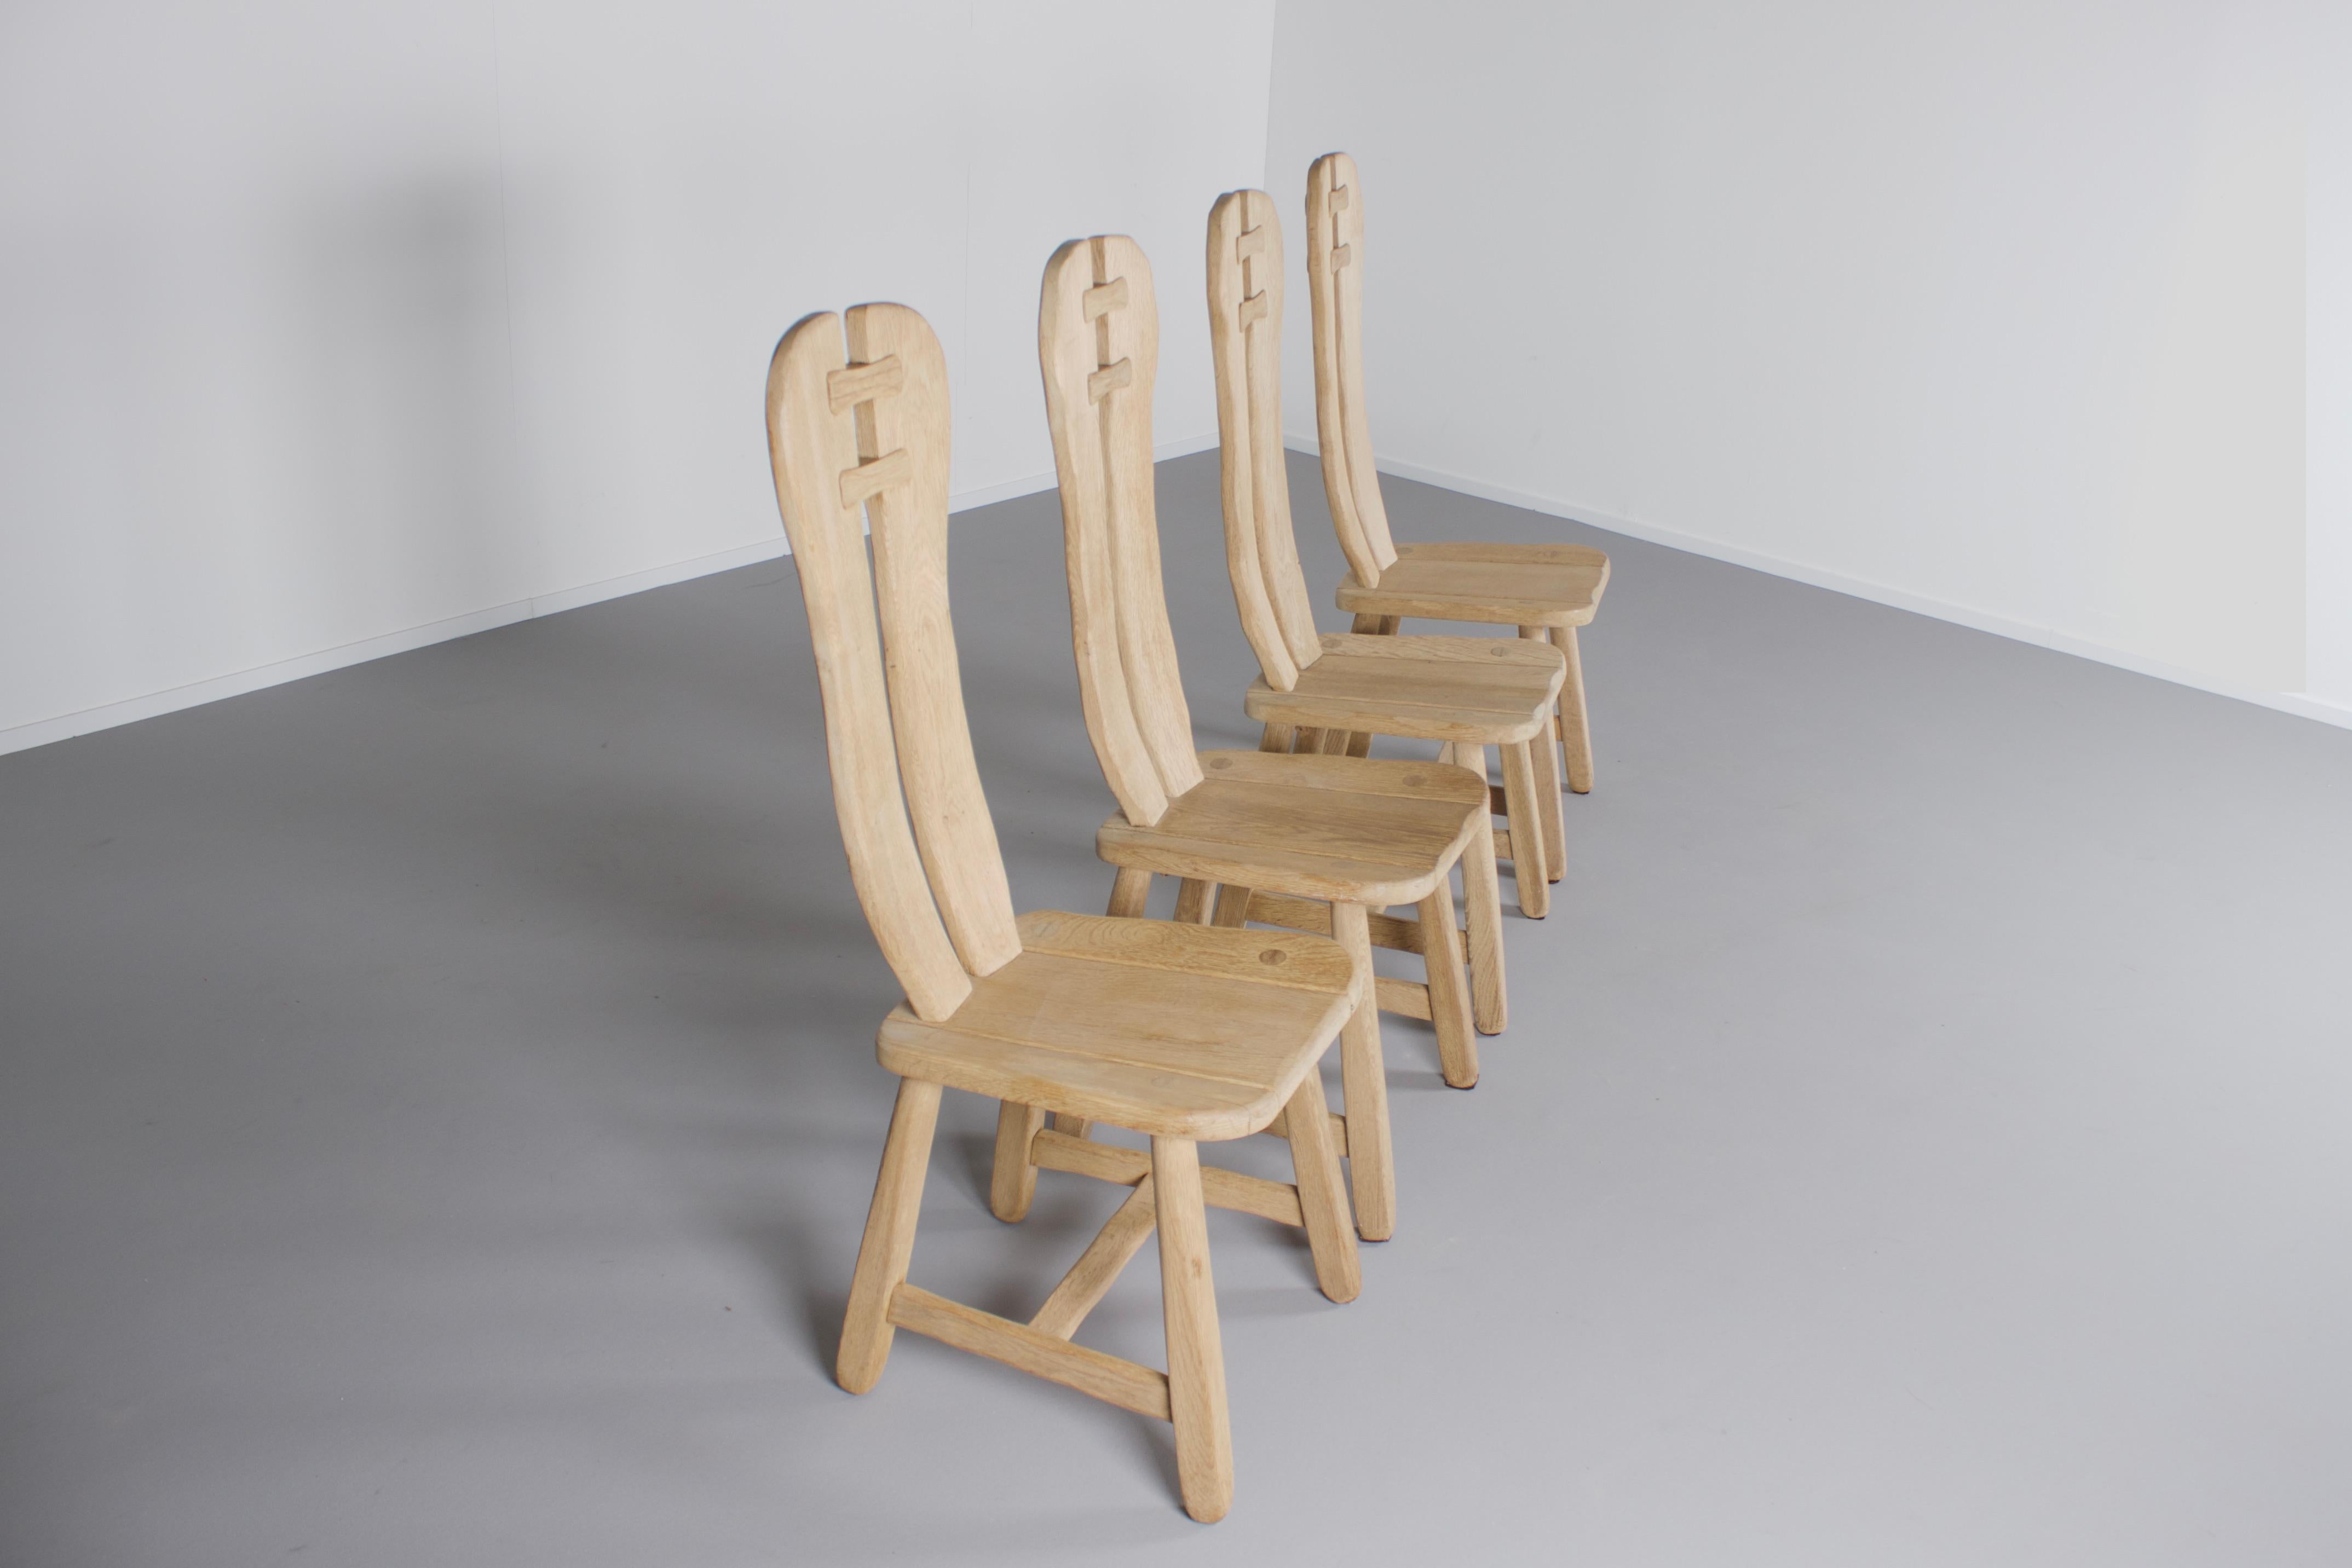 Chaises sculpturales très impressionnantes en très bon état. 

Ces chaises ont été fabriquées dans les années 1970 en Belgique par De Puyt.

Ils sont fabriqués en bois de chêne massif et construits avec de beaux joints visibles. 

L'assise et le